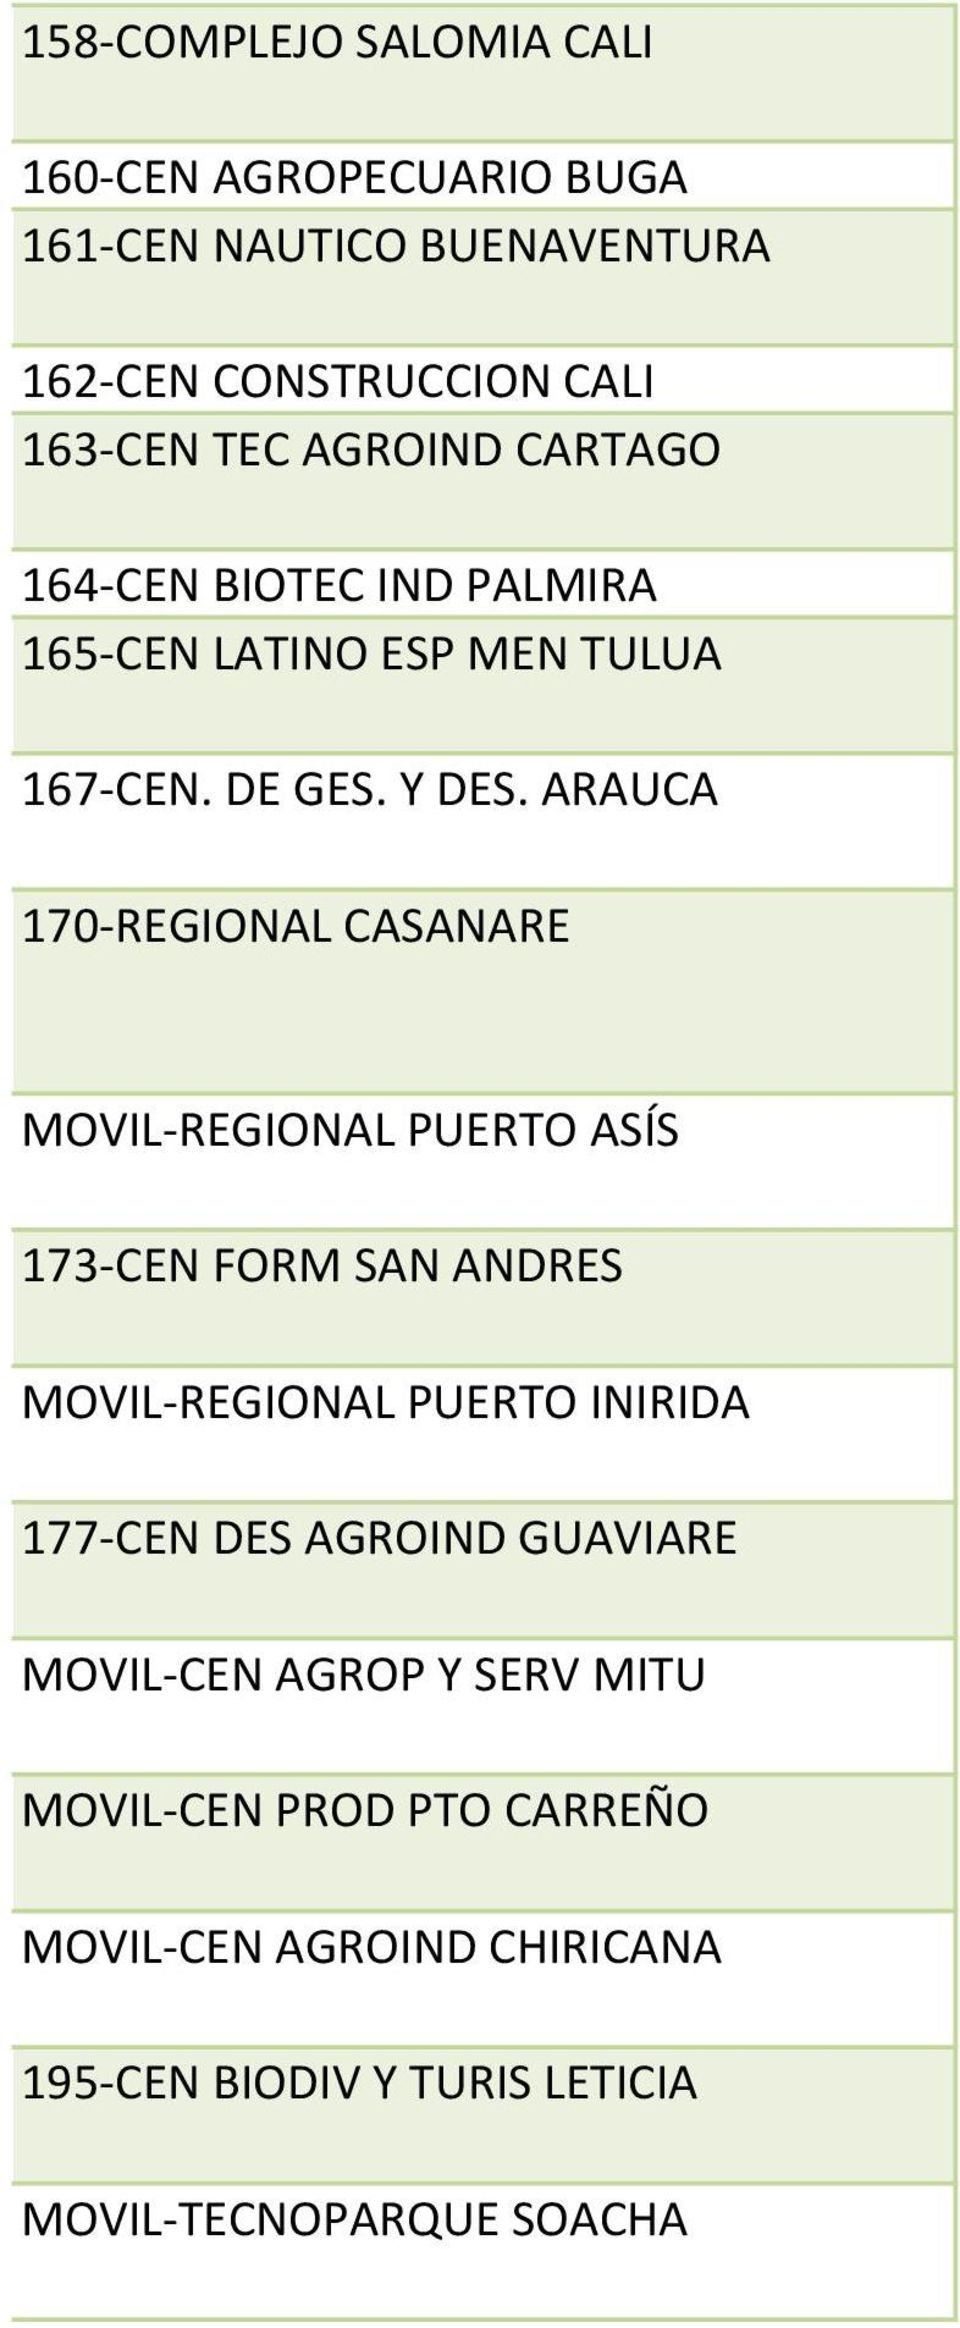 ARAUCA 170-REGIONAL CASANARE MOVIL-REGIONAL PUERTO ASÍS 173-CEN FORM SAN ANDRES MOVIL-REGIONAL PUERTO INIRIDA 177-CEN DES